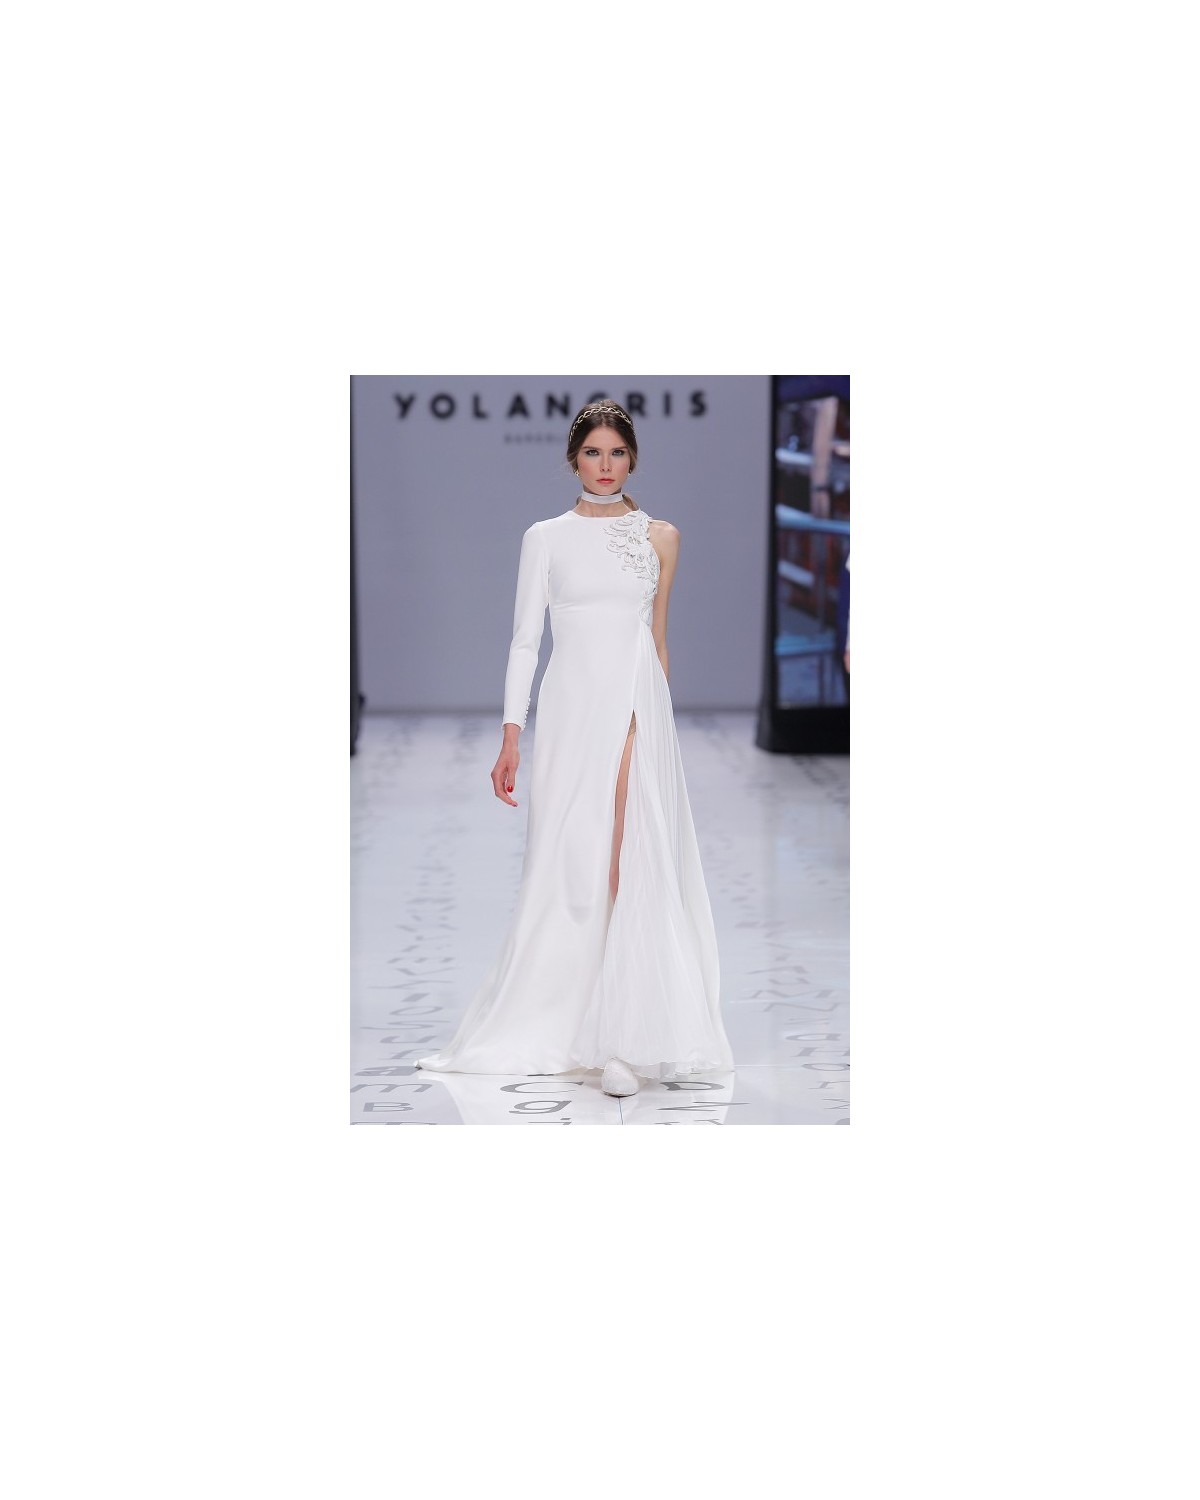 Palmera - abito da sposa collezione 2020 - YolaCris